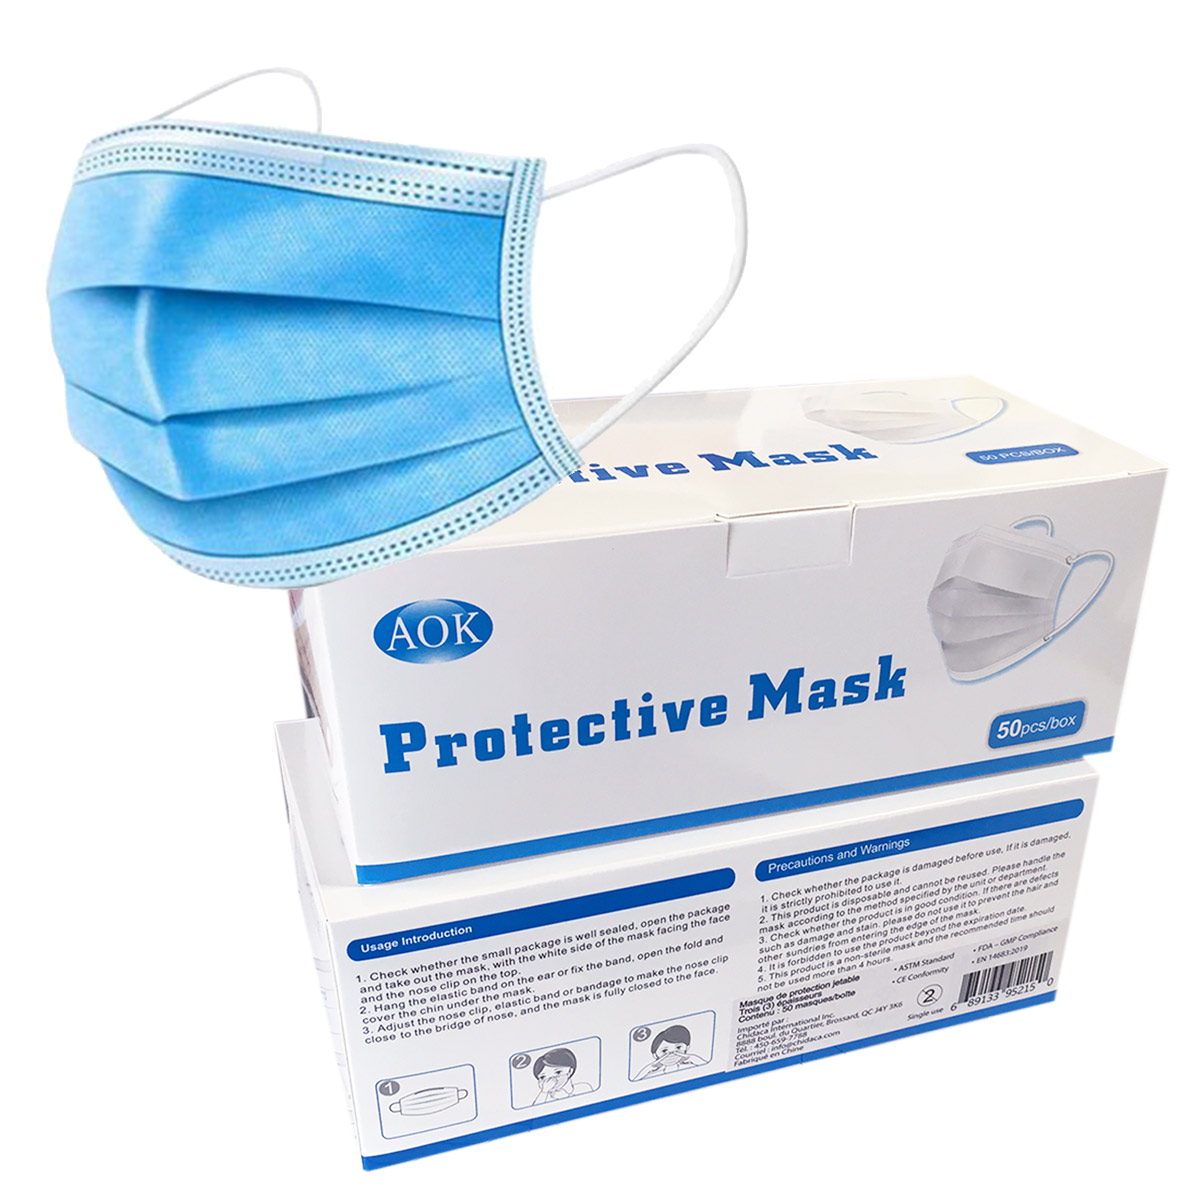 Protective Mask 50 pcs/box - 2-Pack Promo